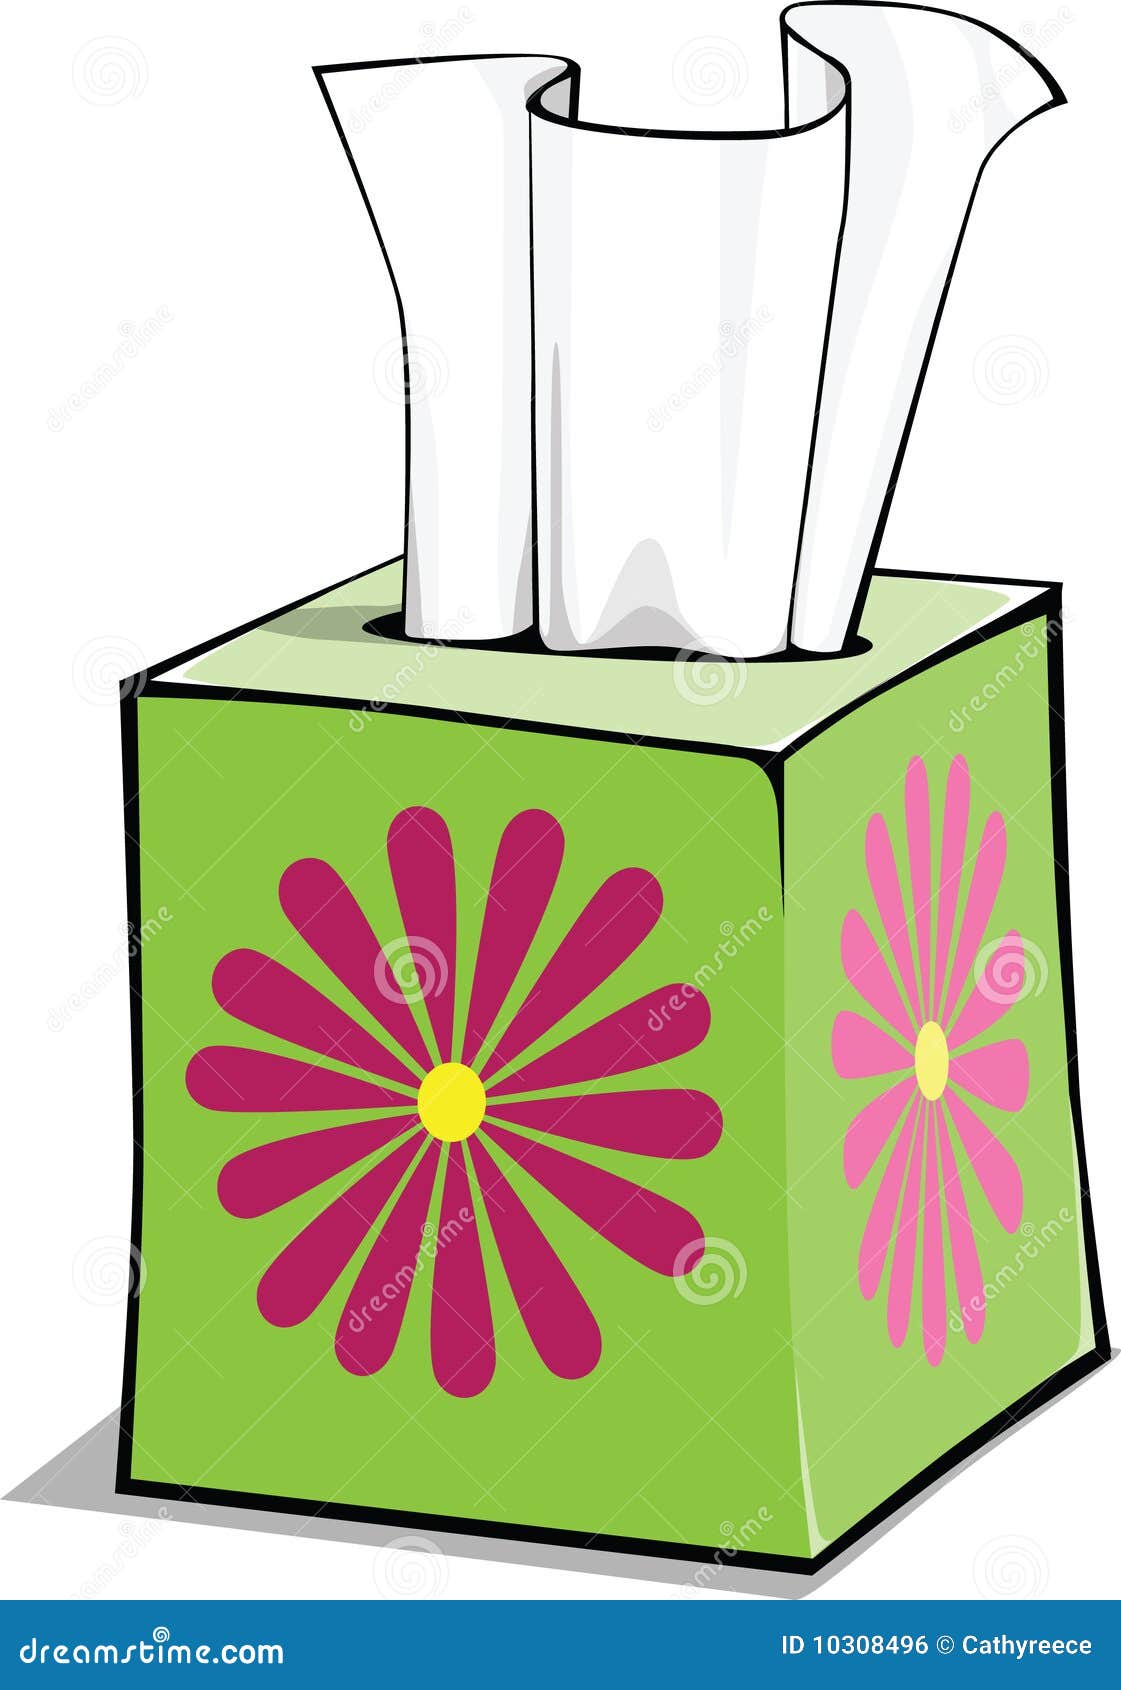 cartoon tissue box